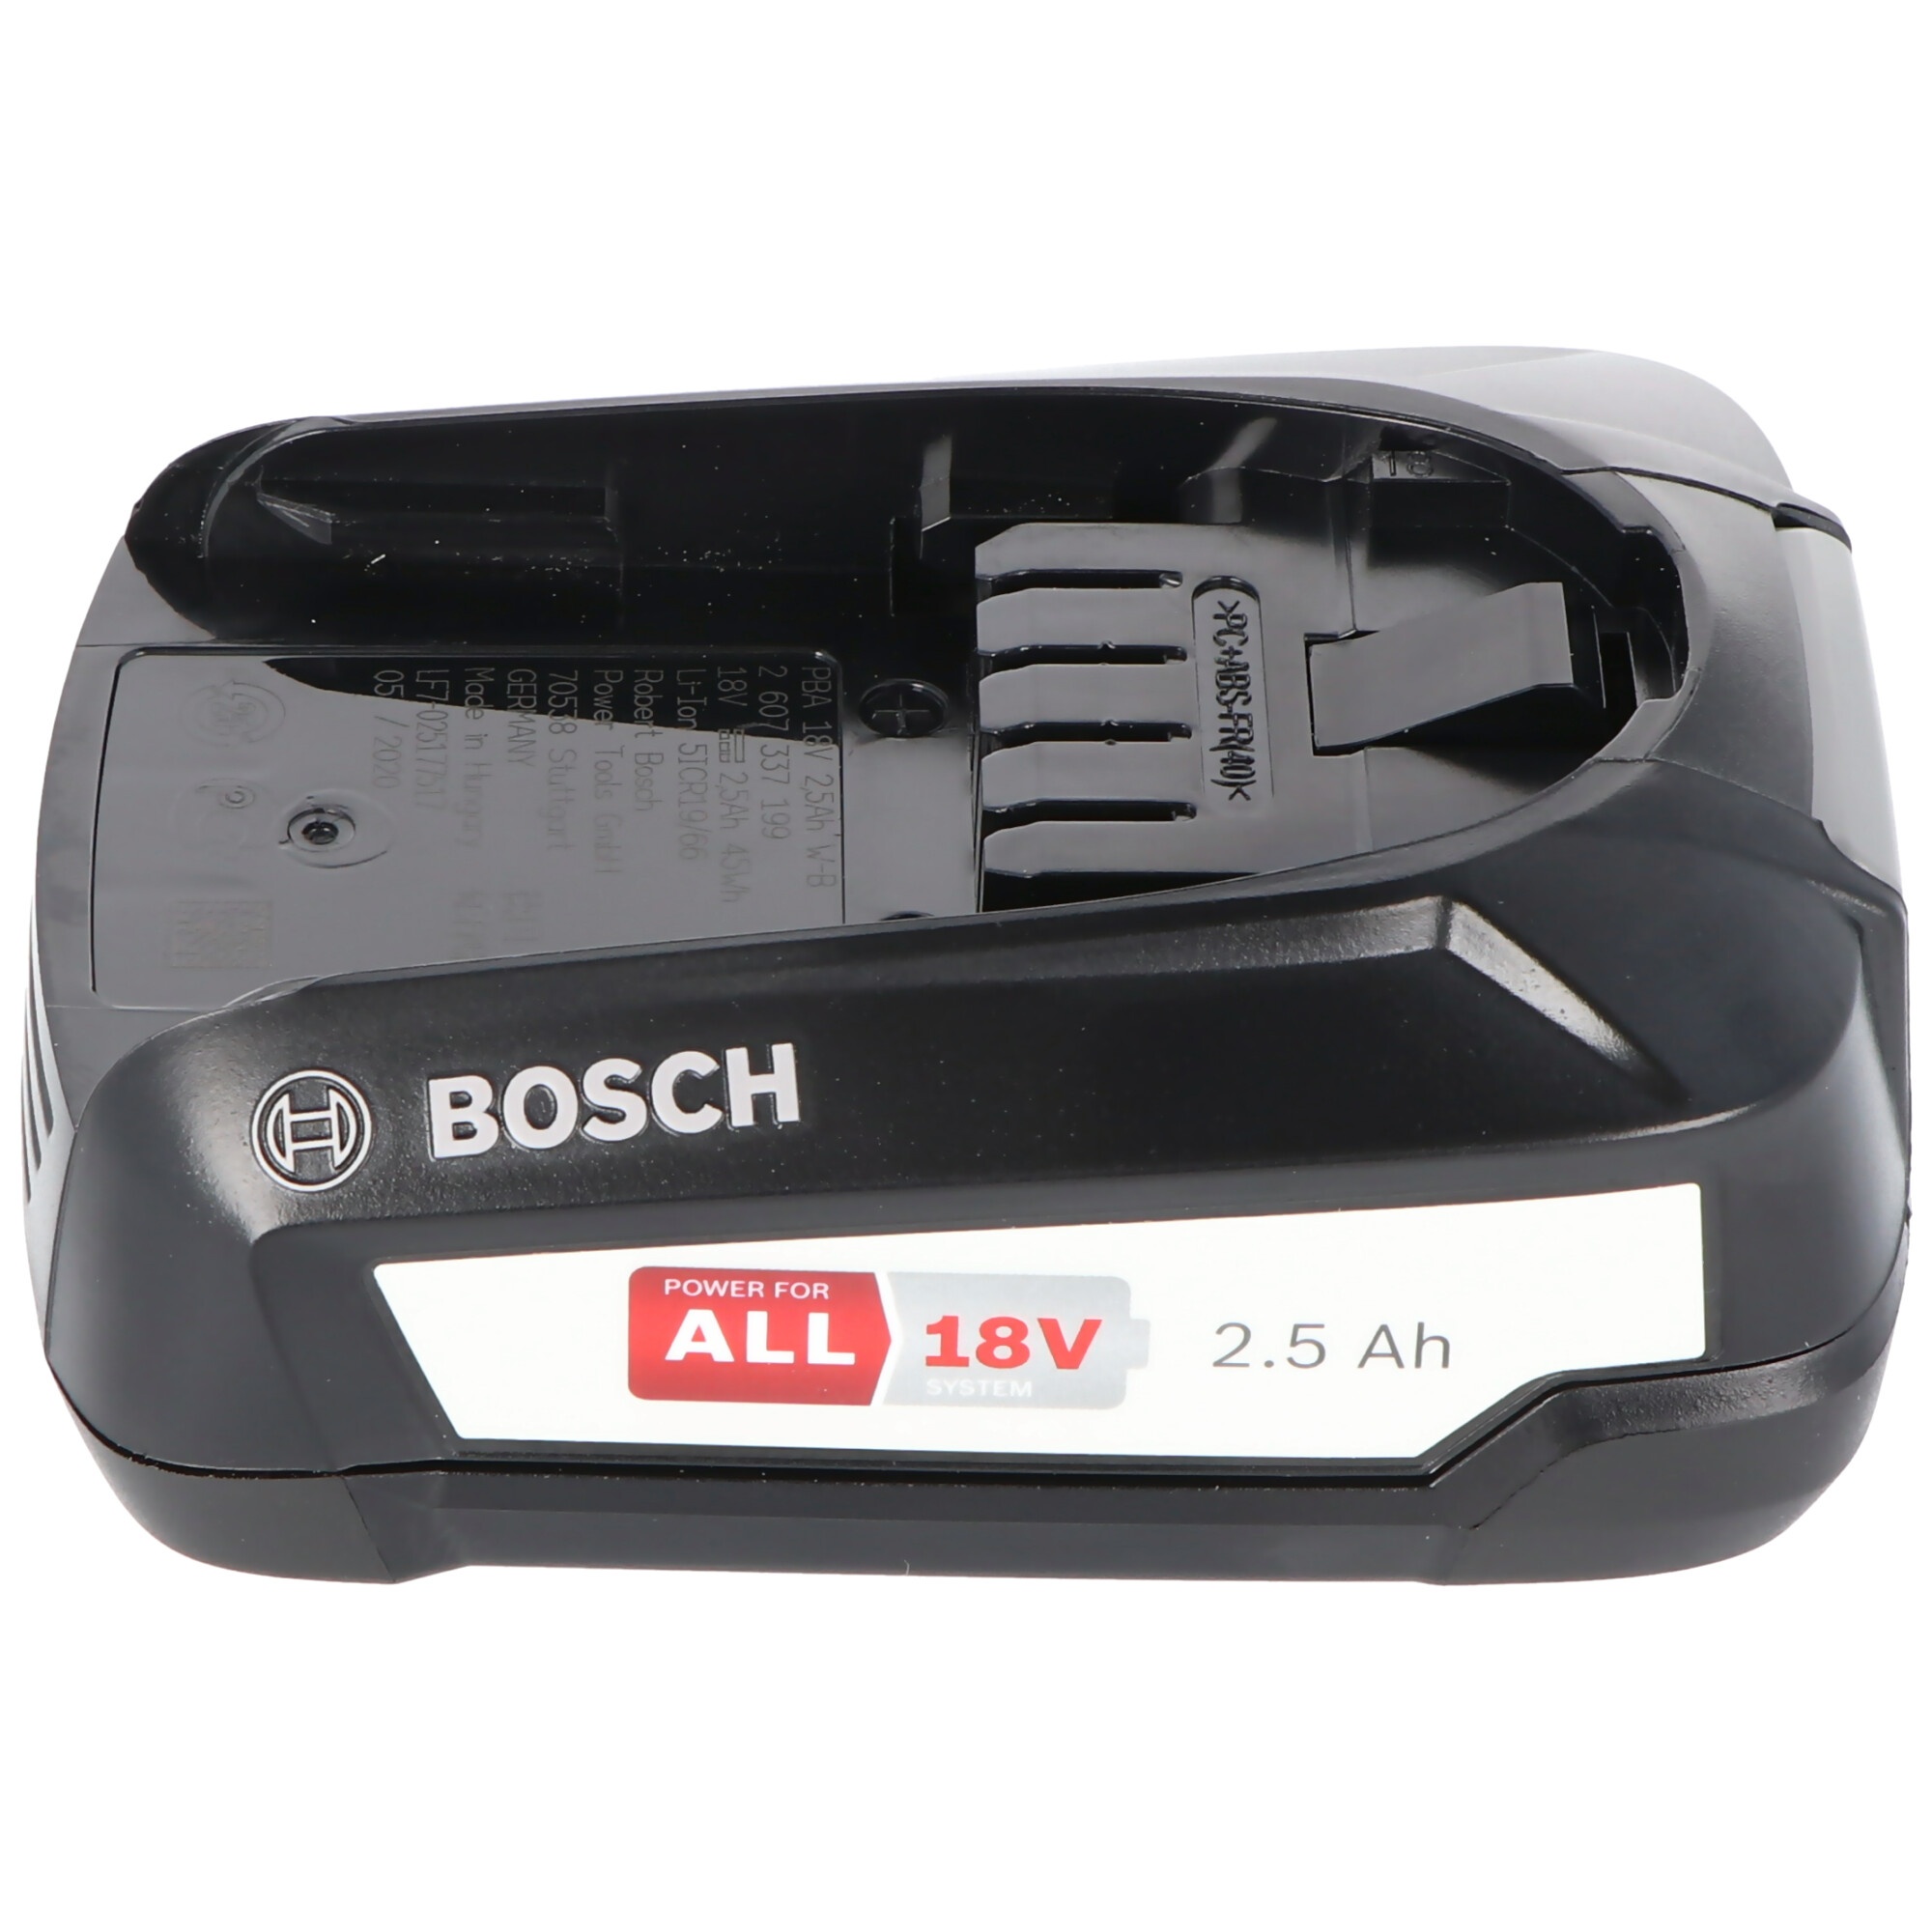 BOSCH Bosch 18 Bosch Ah Volt Geräte Li-Ion des - und Garden 18 mAh Home grünen 2500 für passend Ersatz Lithium-Ionen 2,5 Werkzeug-Akku, Akku alle Li-Ion